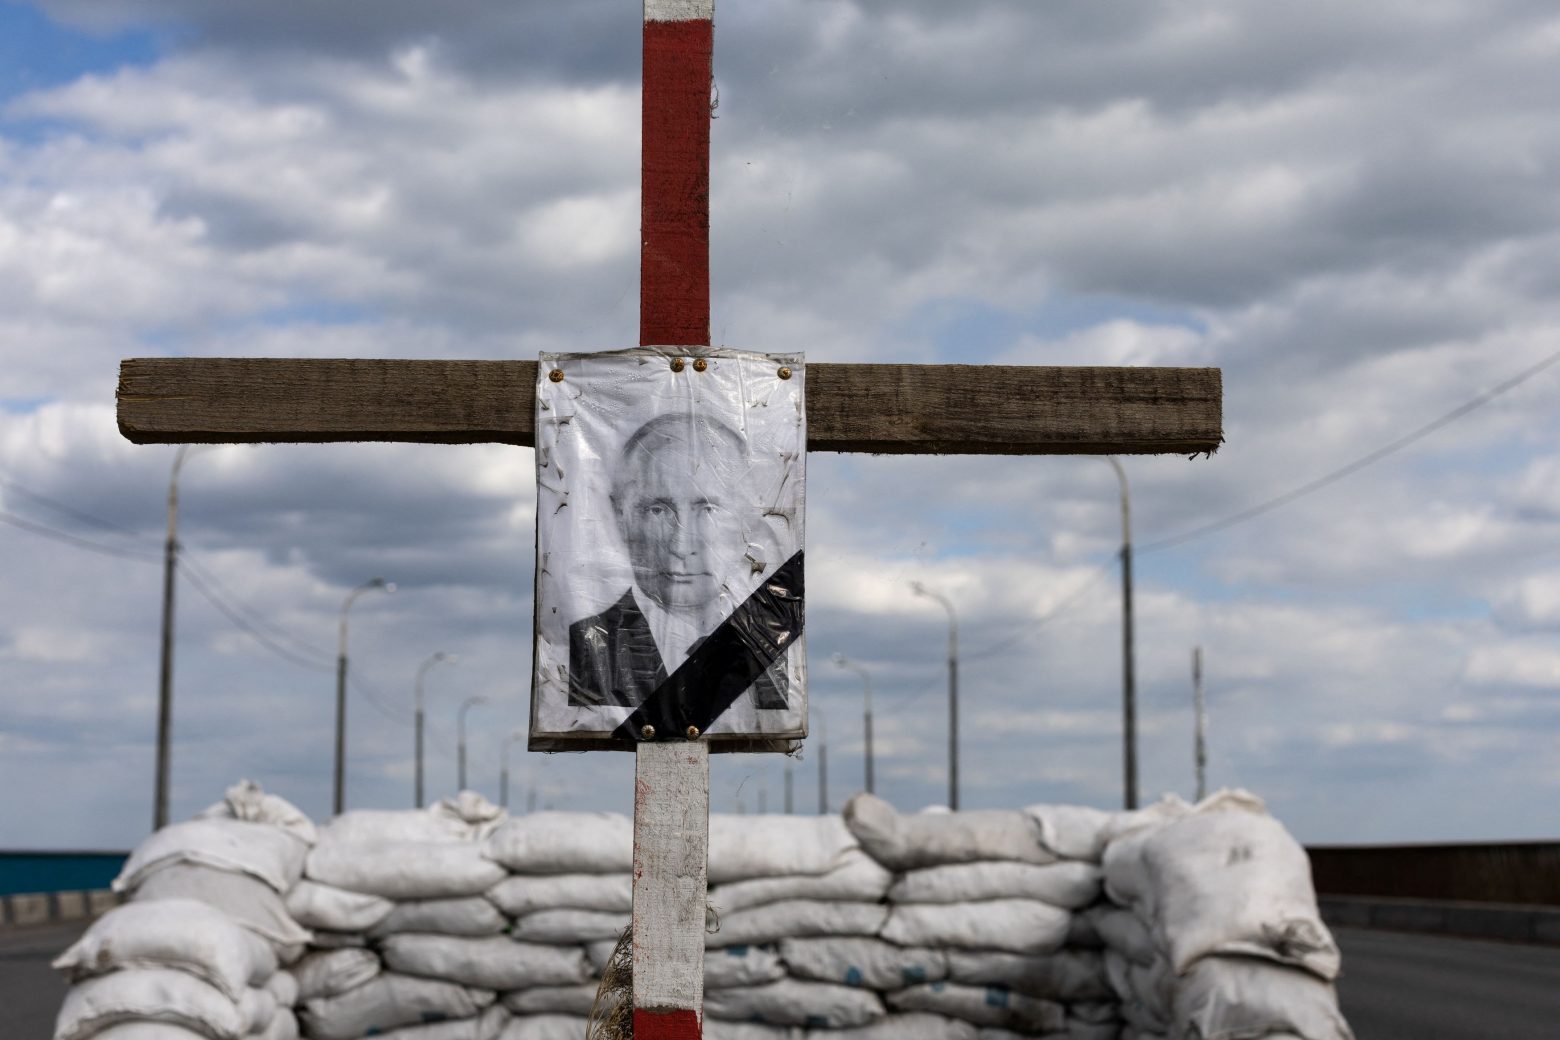 Βρετανία: Η Ρωσία έχει χάσει το ένα τρίτο των δυνάμεών της στην Ουκρανία